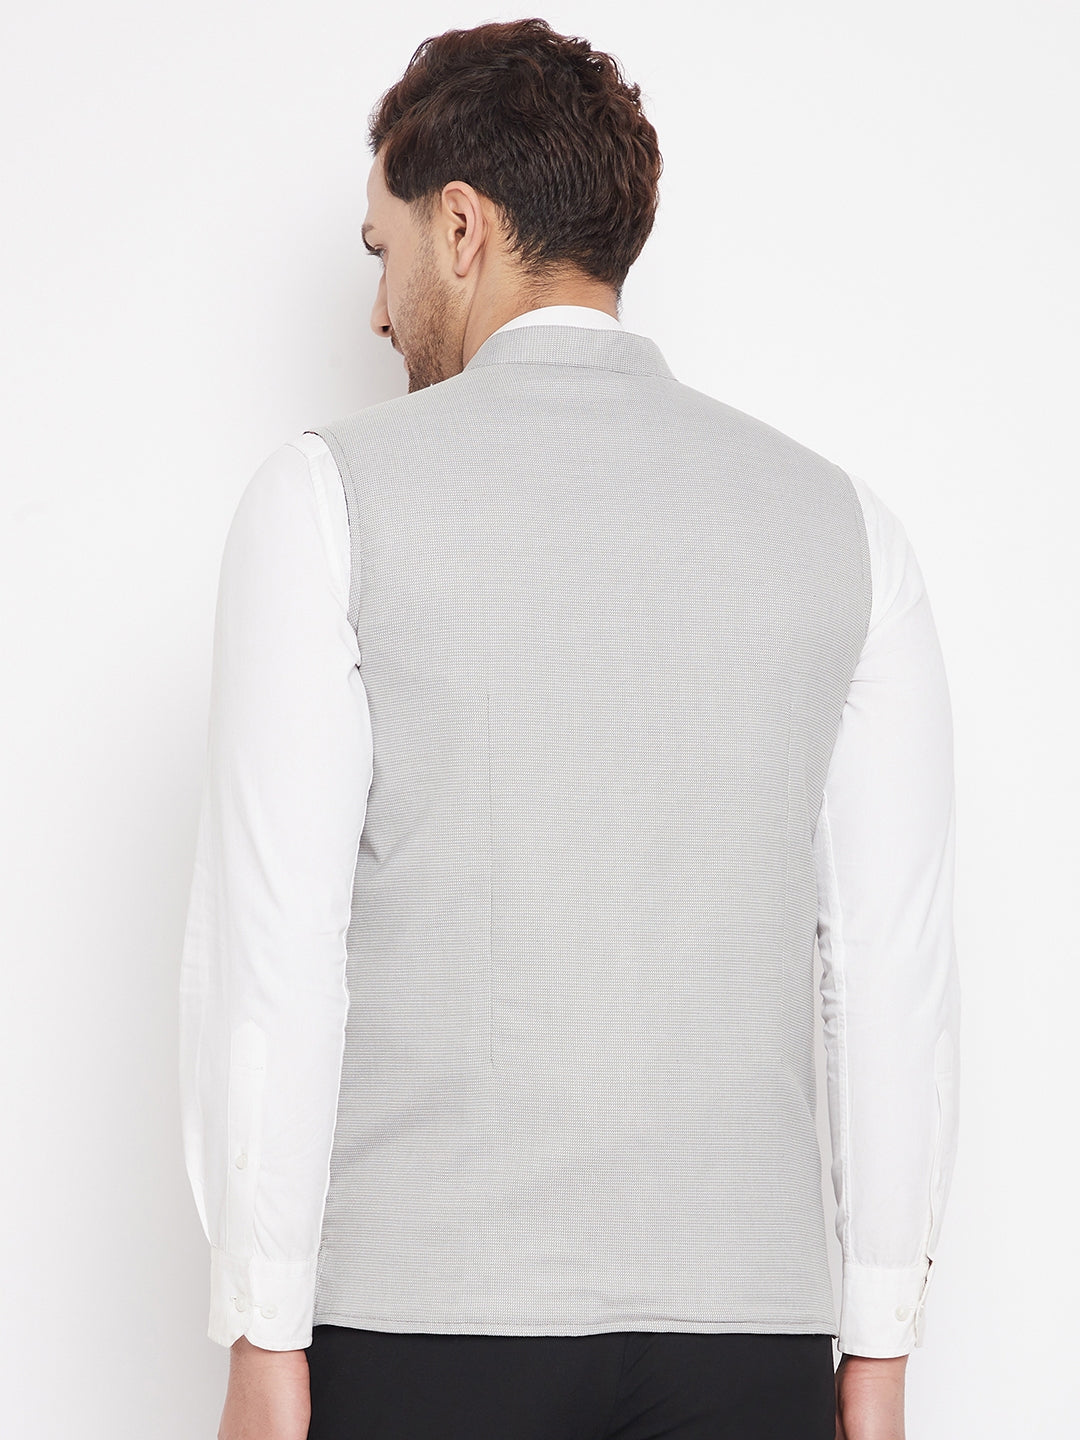 Men's Grey Color Nehru Jacket-Contrast Lining-Free Pocket Square - Even Apparels